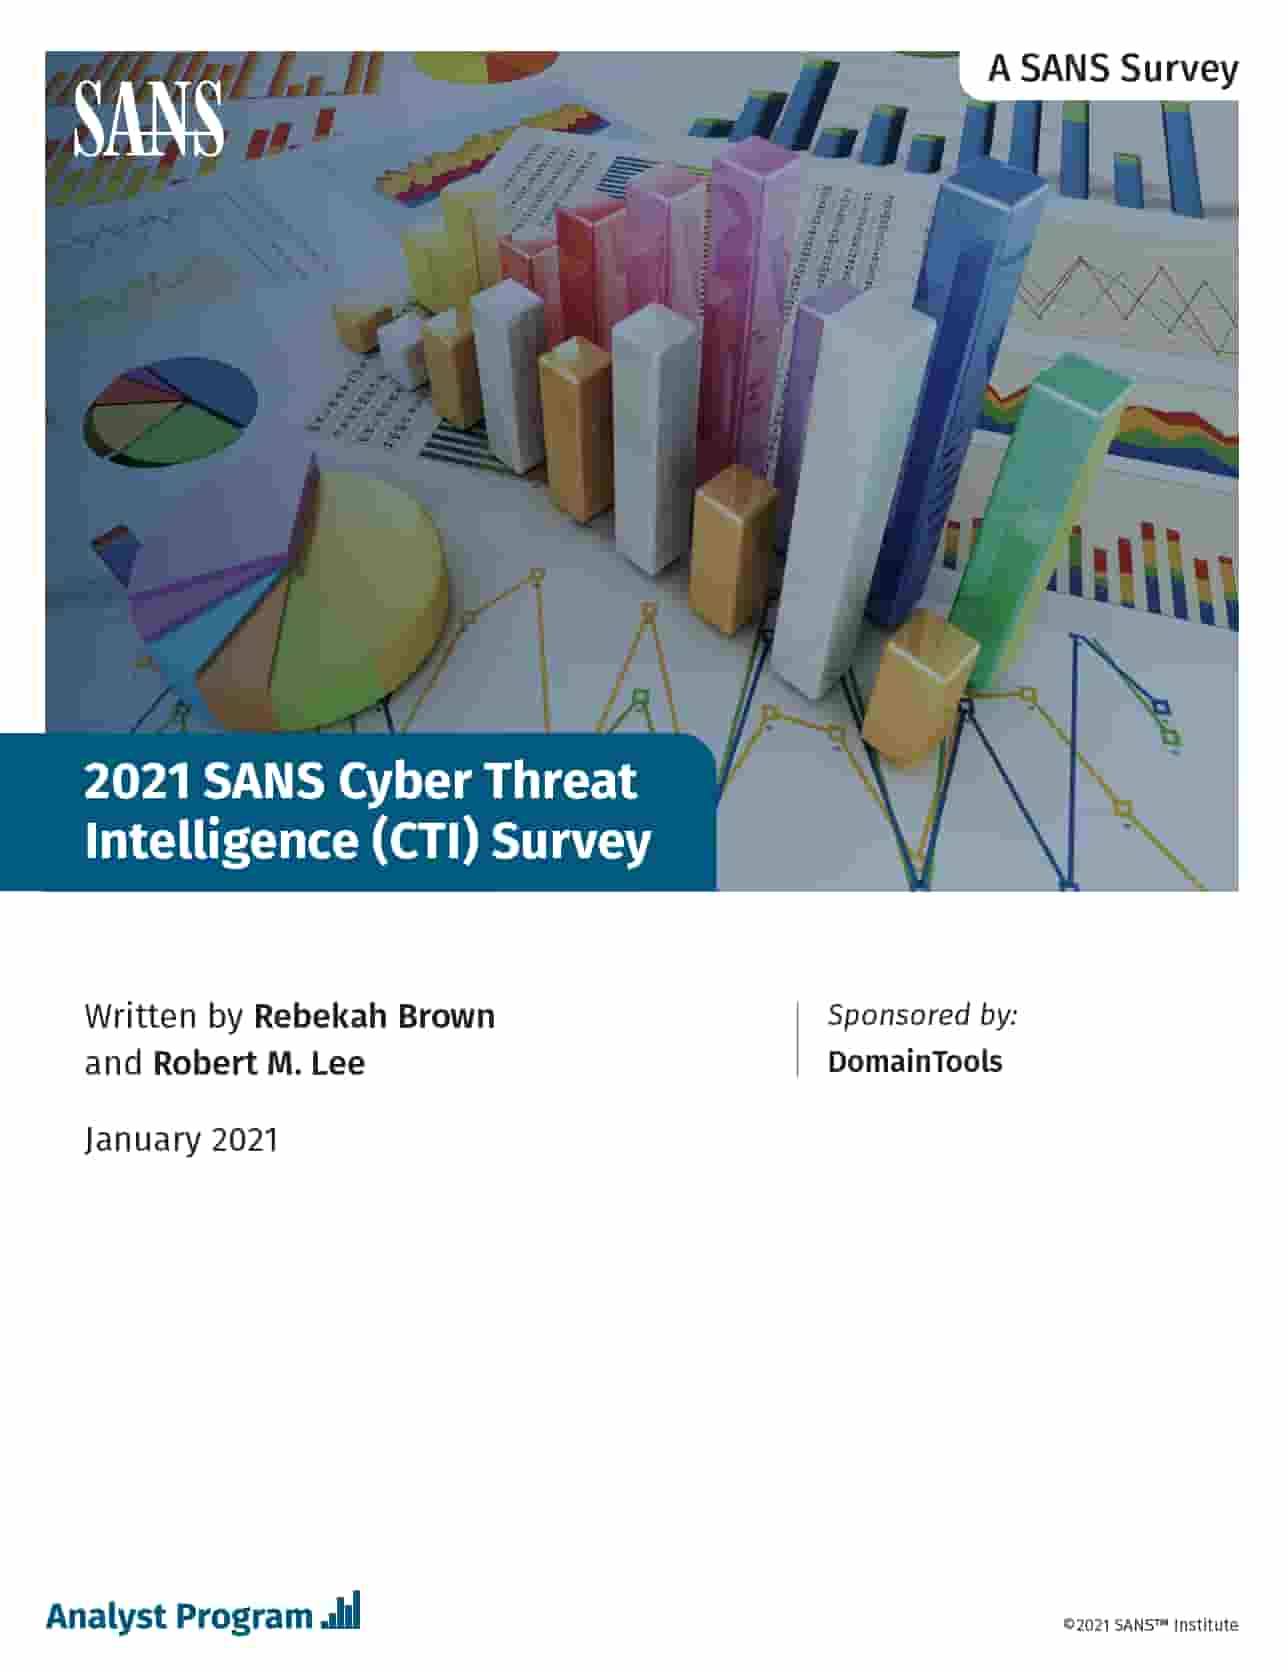 Sans 2021 CTI Survey 2021 Asset Preview